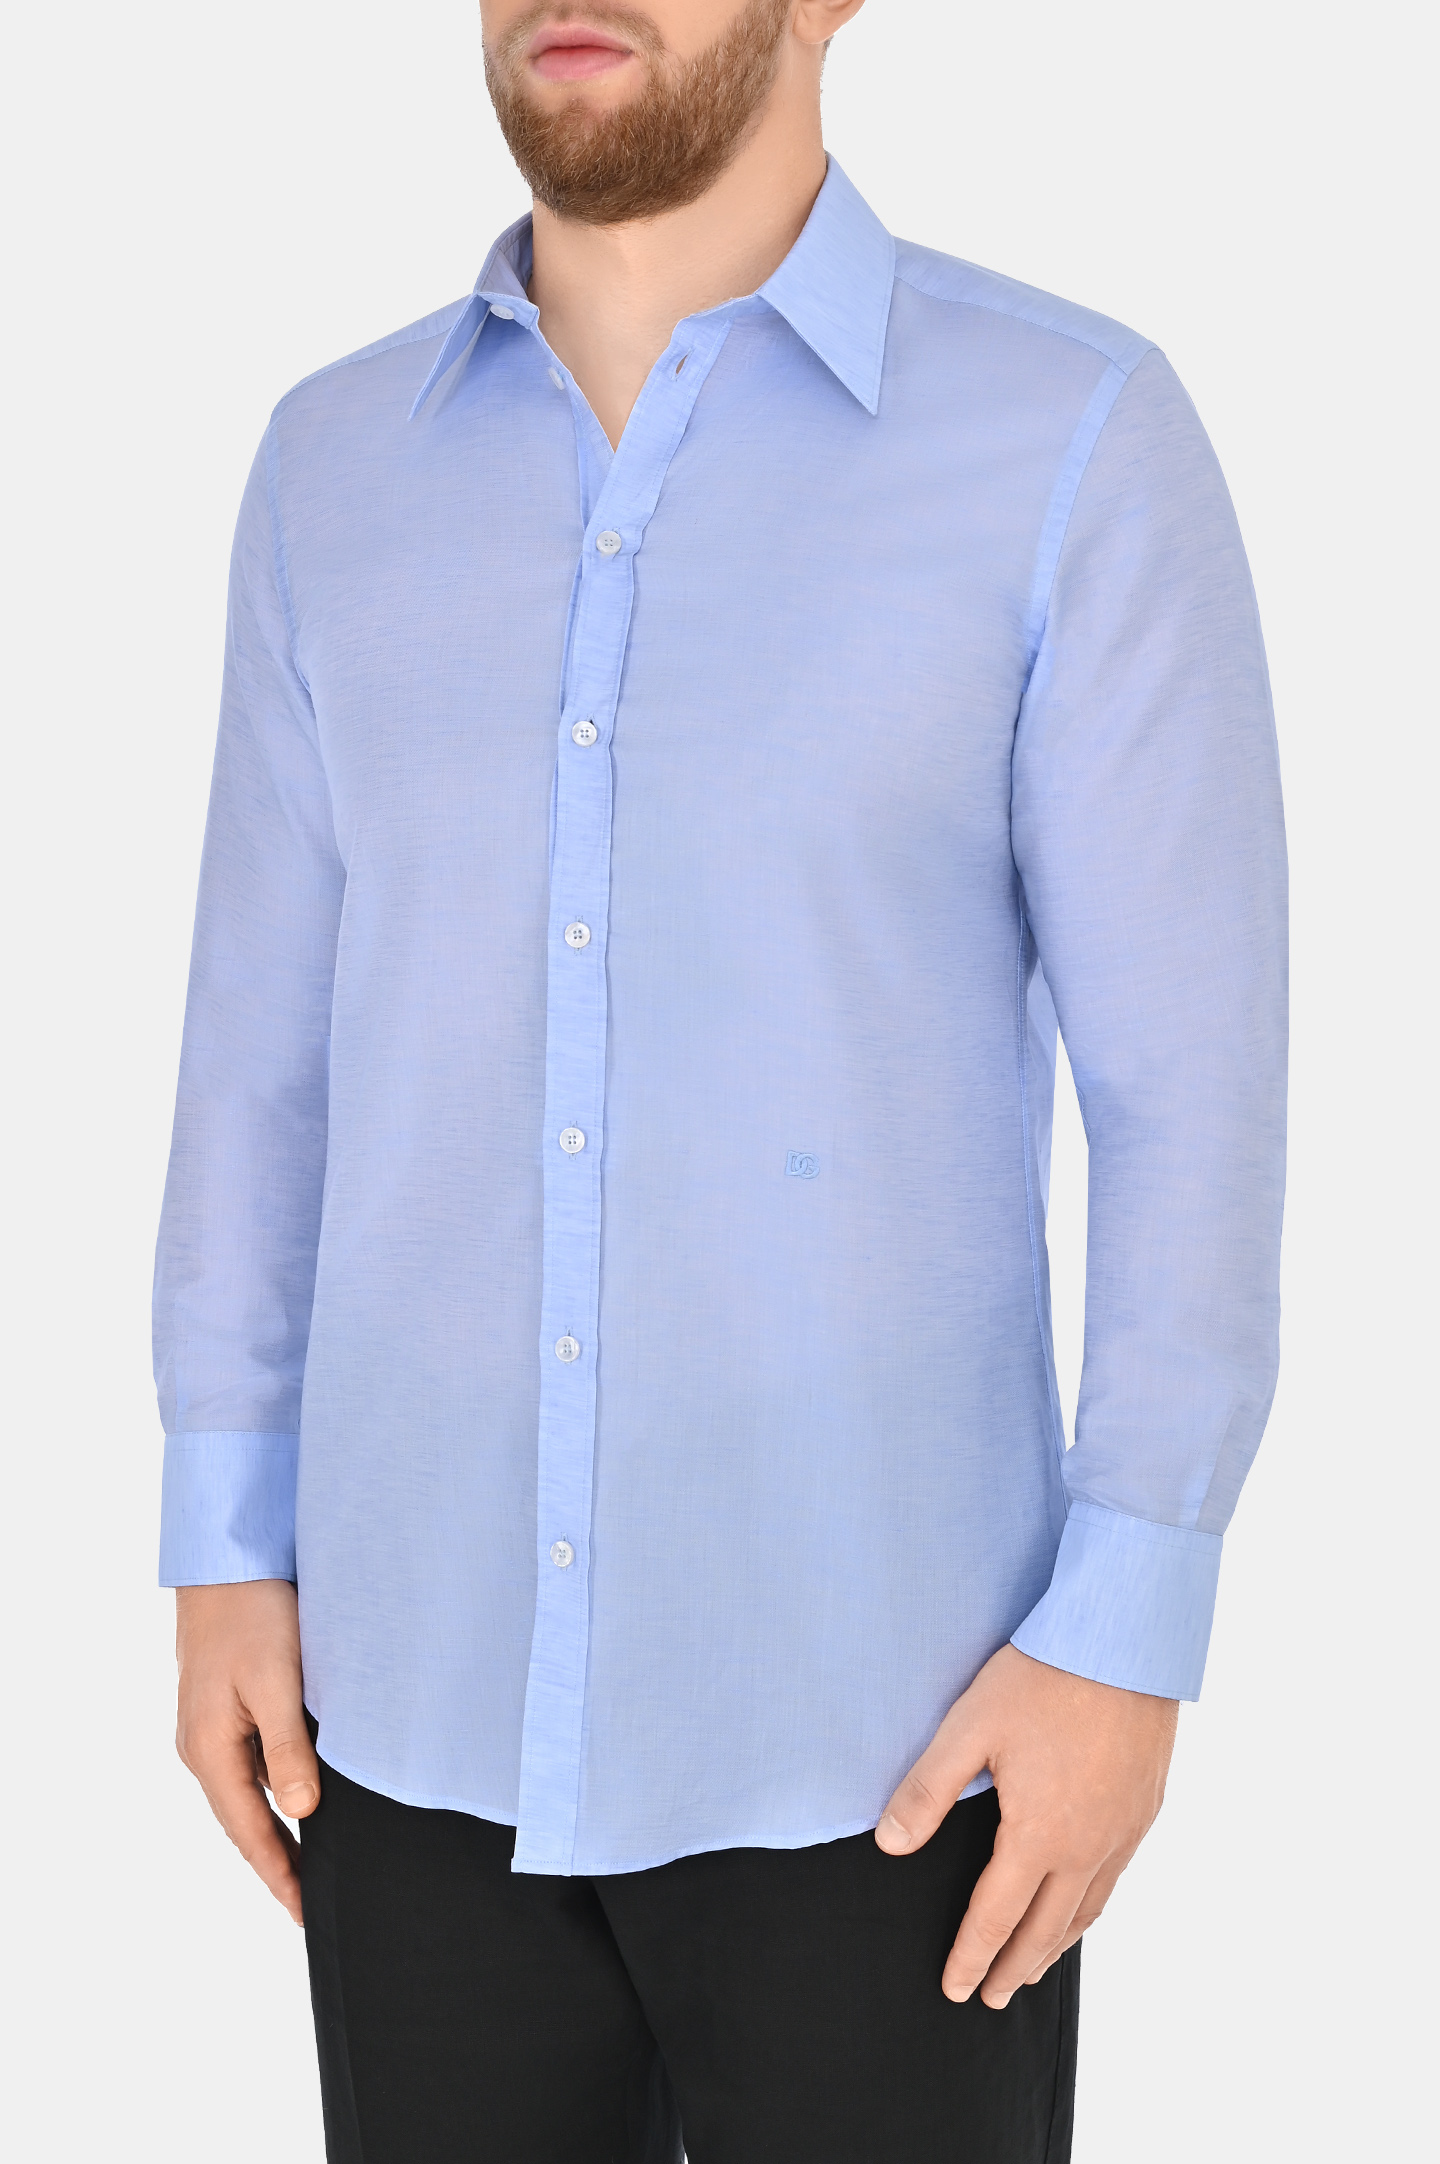 Рубашка из хлопка и льна DOLCE & GABBANA G5LH9Z FUTB6, цвет: Голубой, Мужской